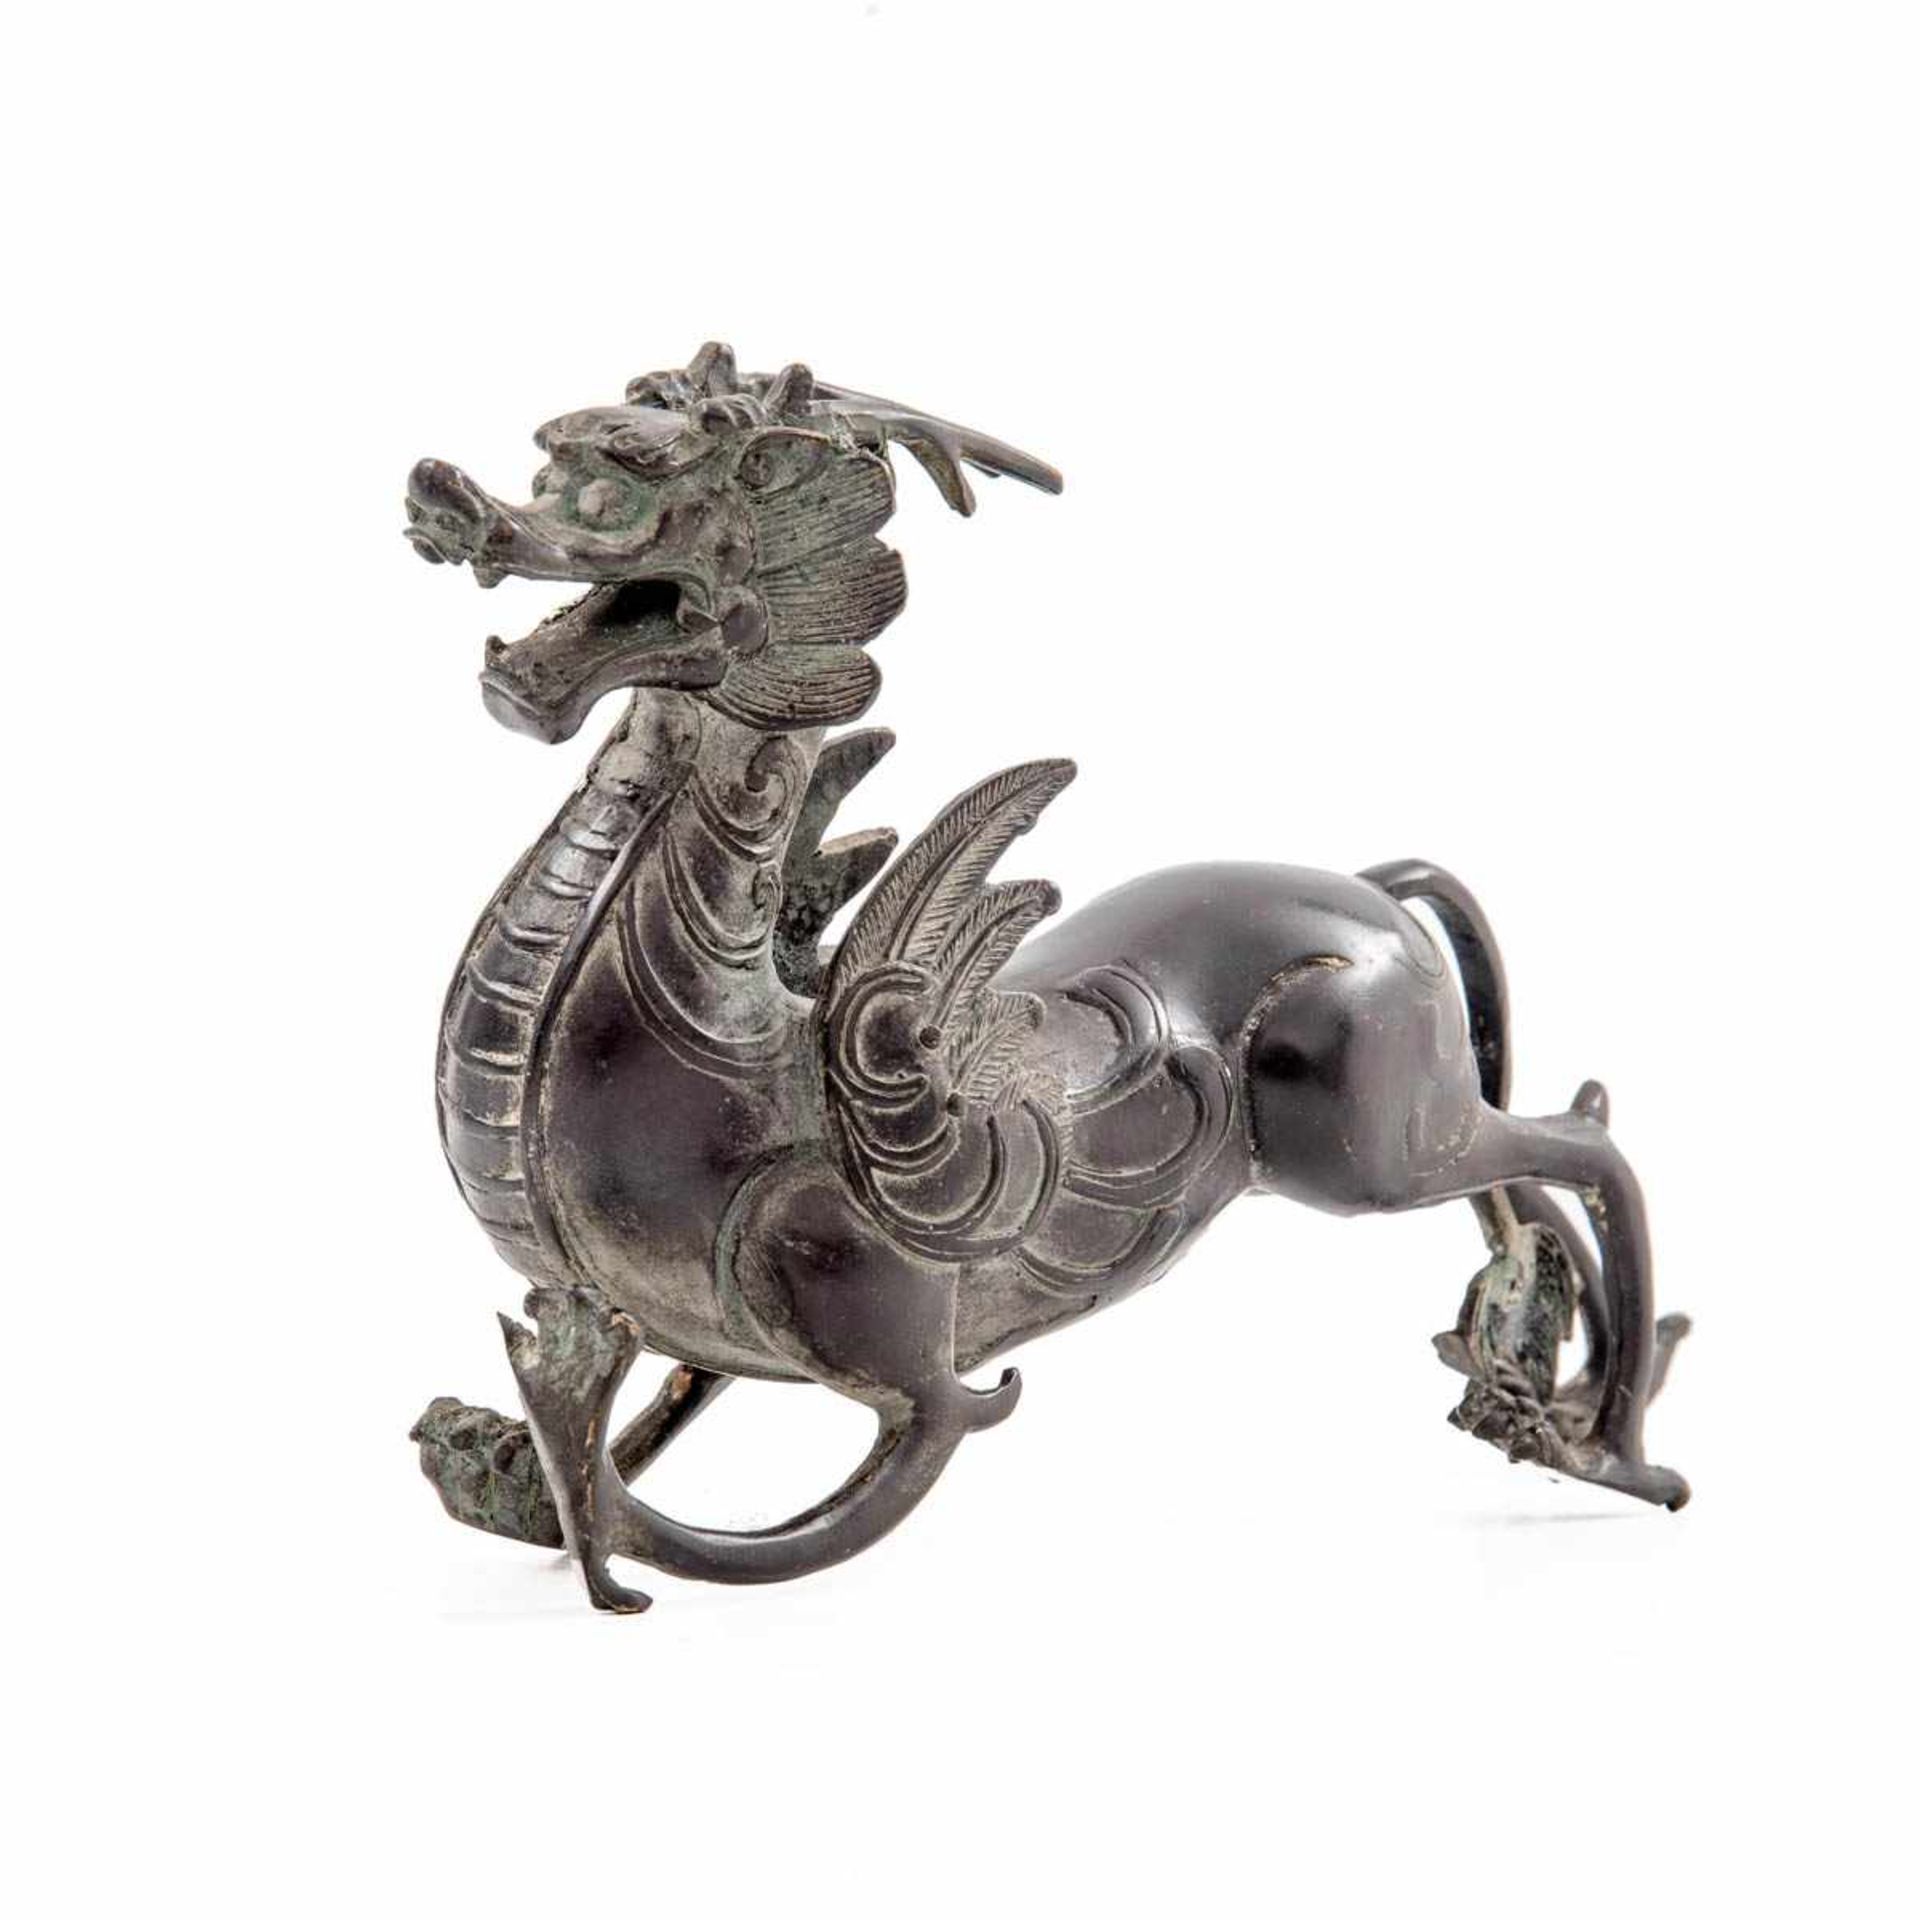 Drachenfigur, China um 1900 Bronze, schwarz-braun patiniert. Darstellung des geflügelten